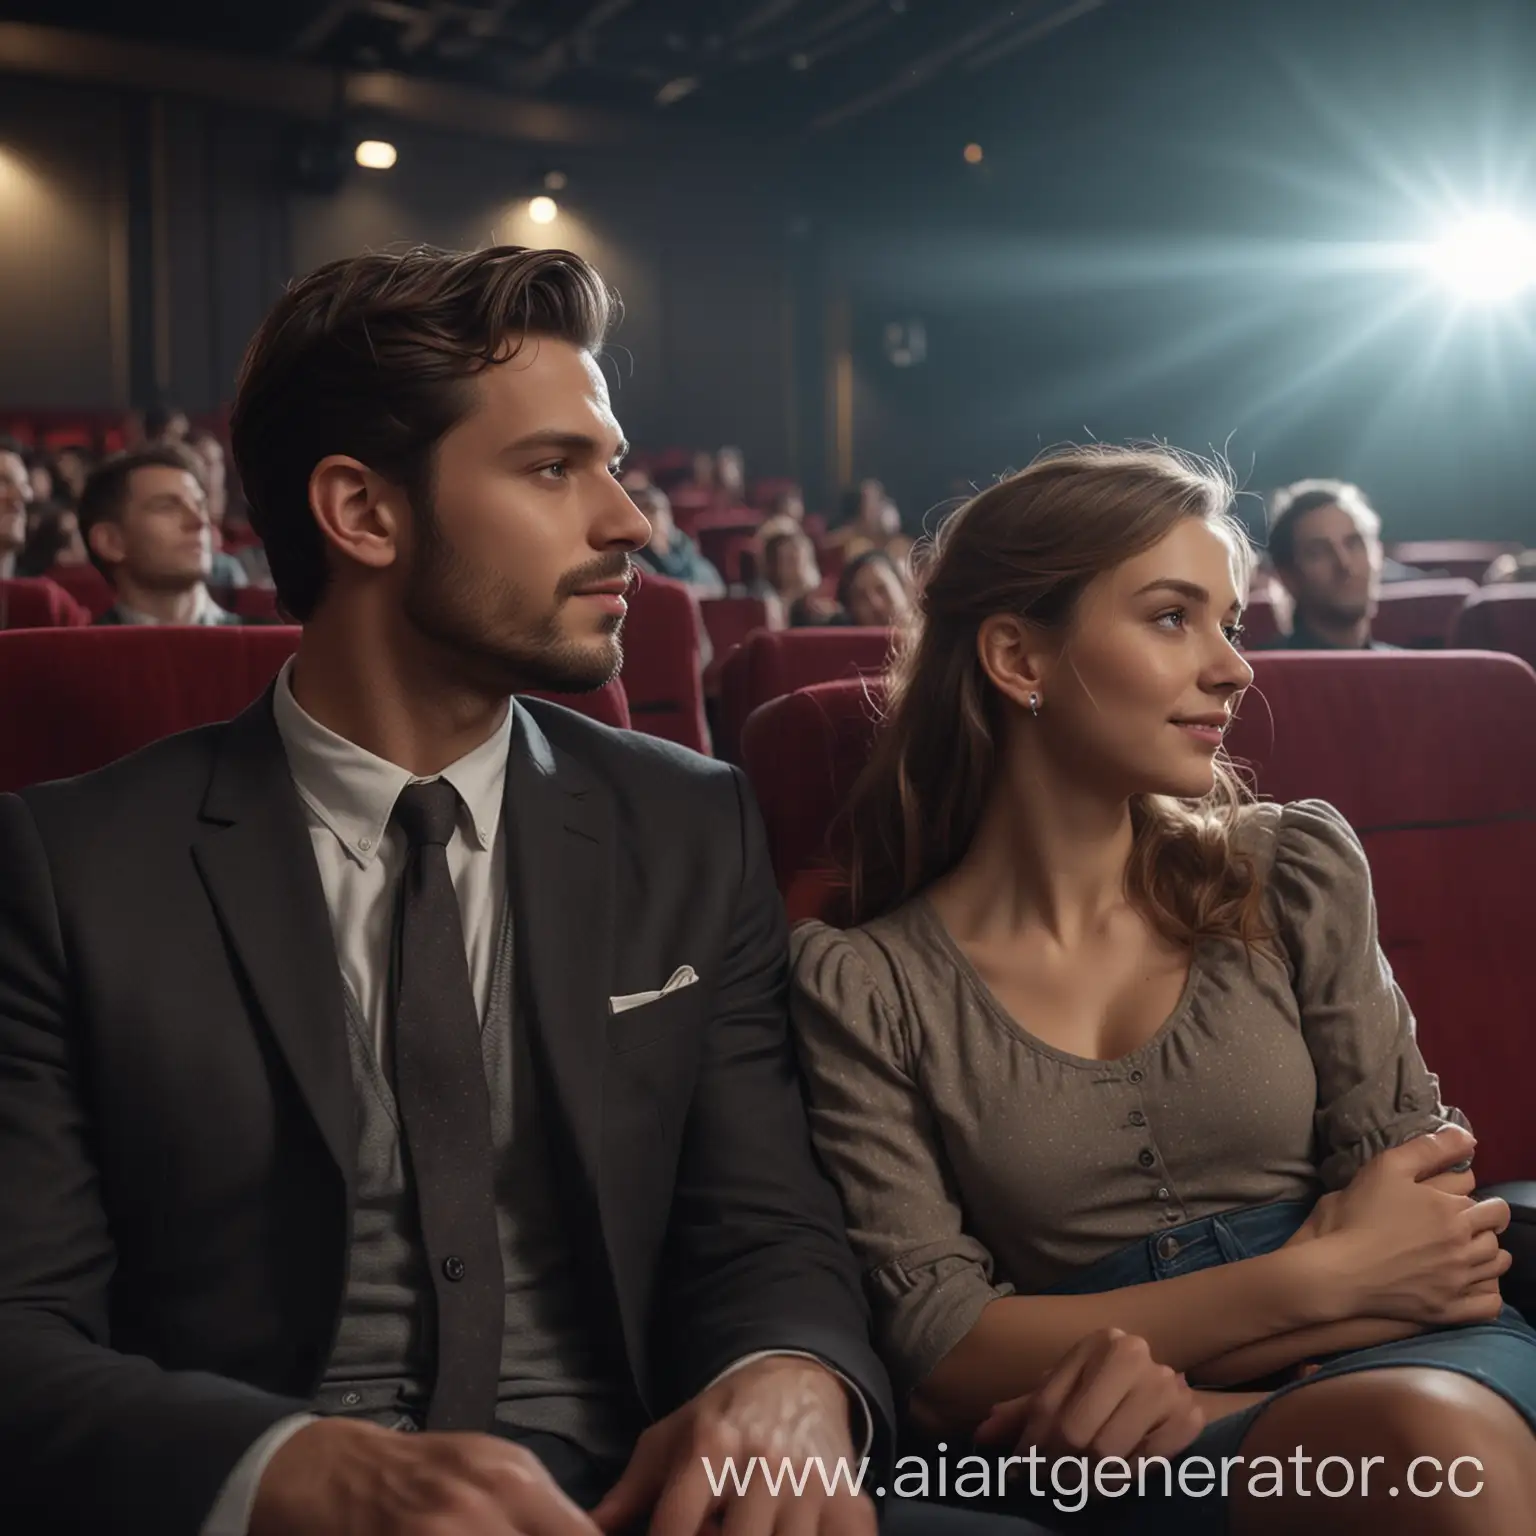 Пара влюблённых сидит в заднем ряду кинотеатра. огромное количество мелких деталей в супер-высоком качестве. Реалистичное изображение. Качество 8k